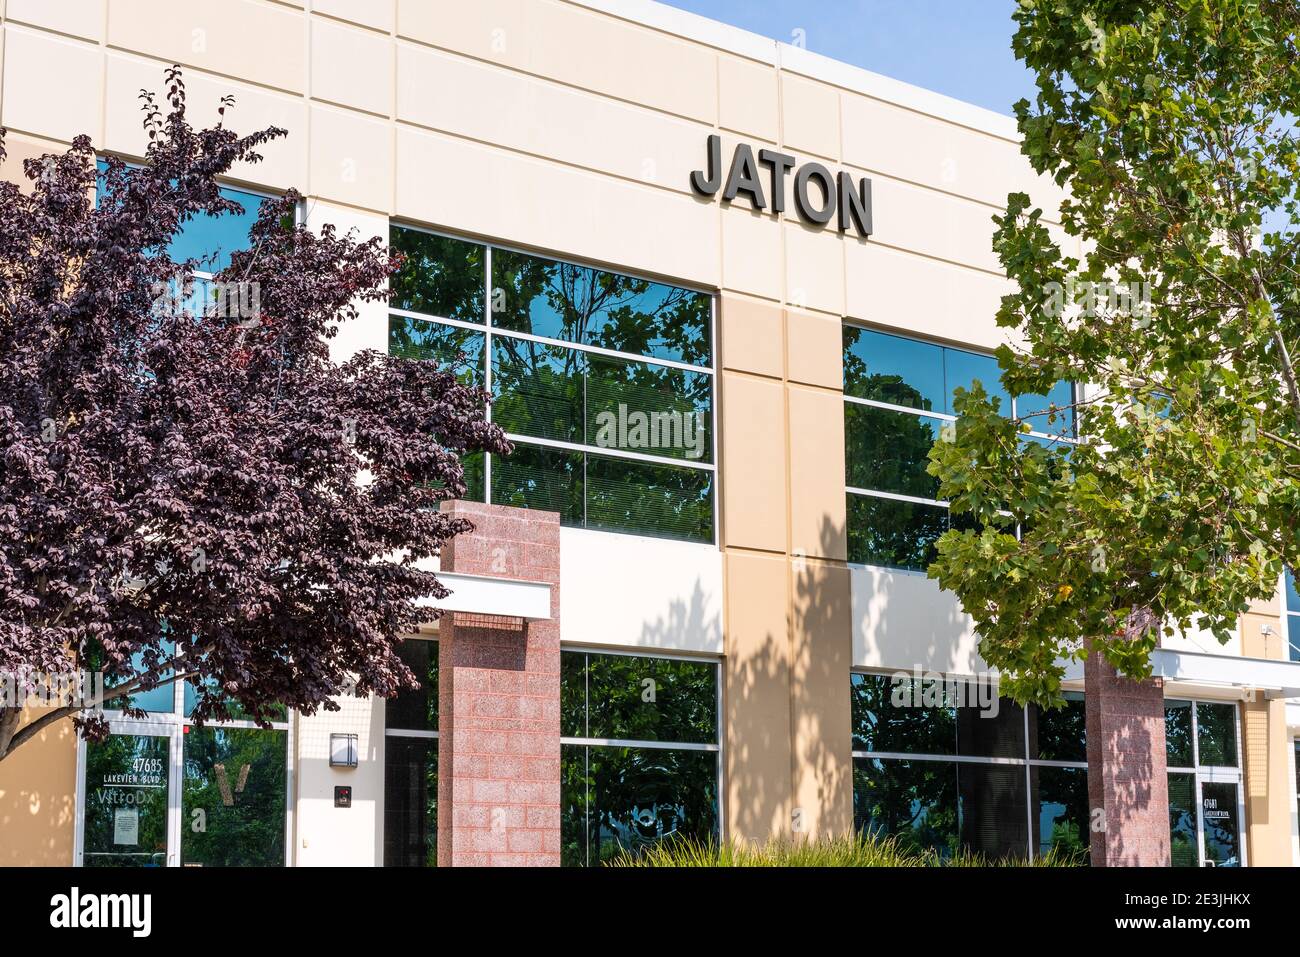 Sep 17, 2020 Fremont / CA / USA - Jaton Hauptsitz im Silicon Valley; Jaton Corporation ist in der Halbleiterindustrie tätig und produziert Stockfoto